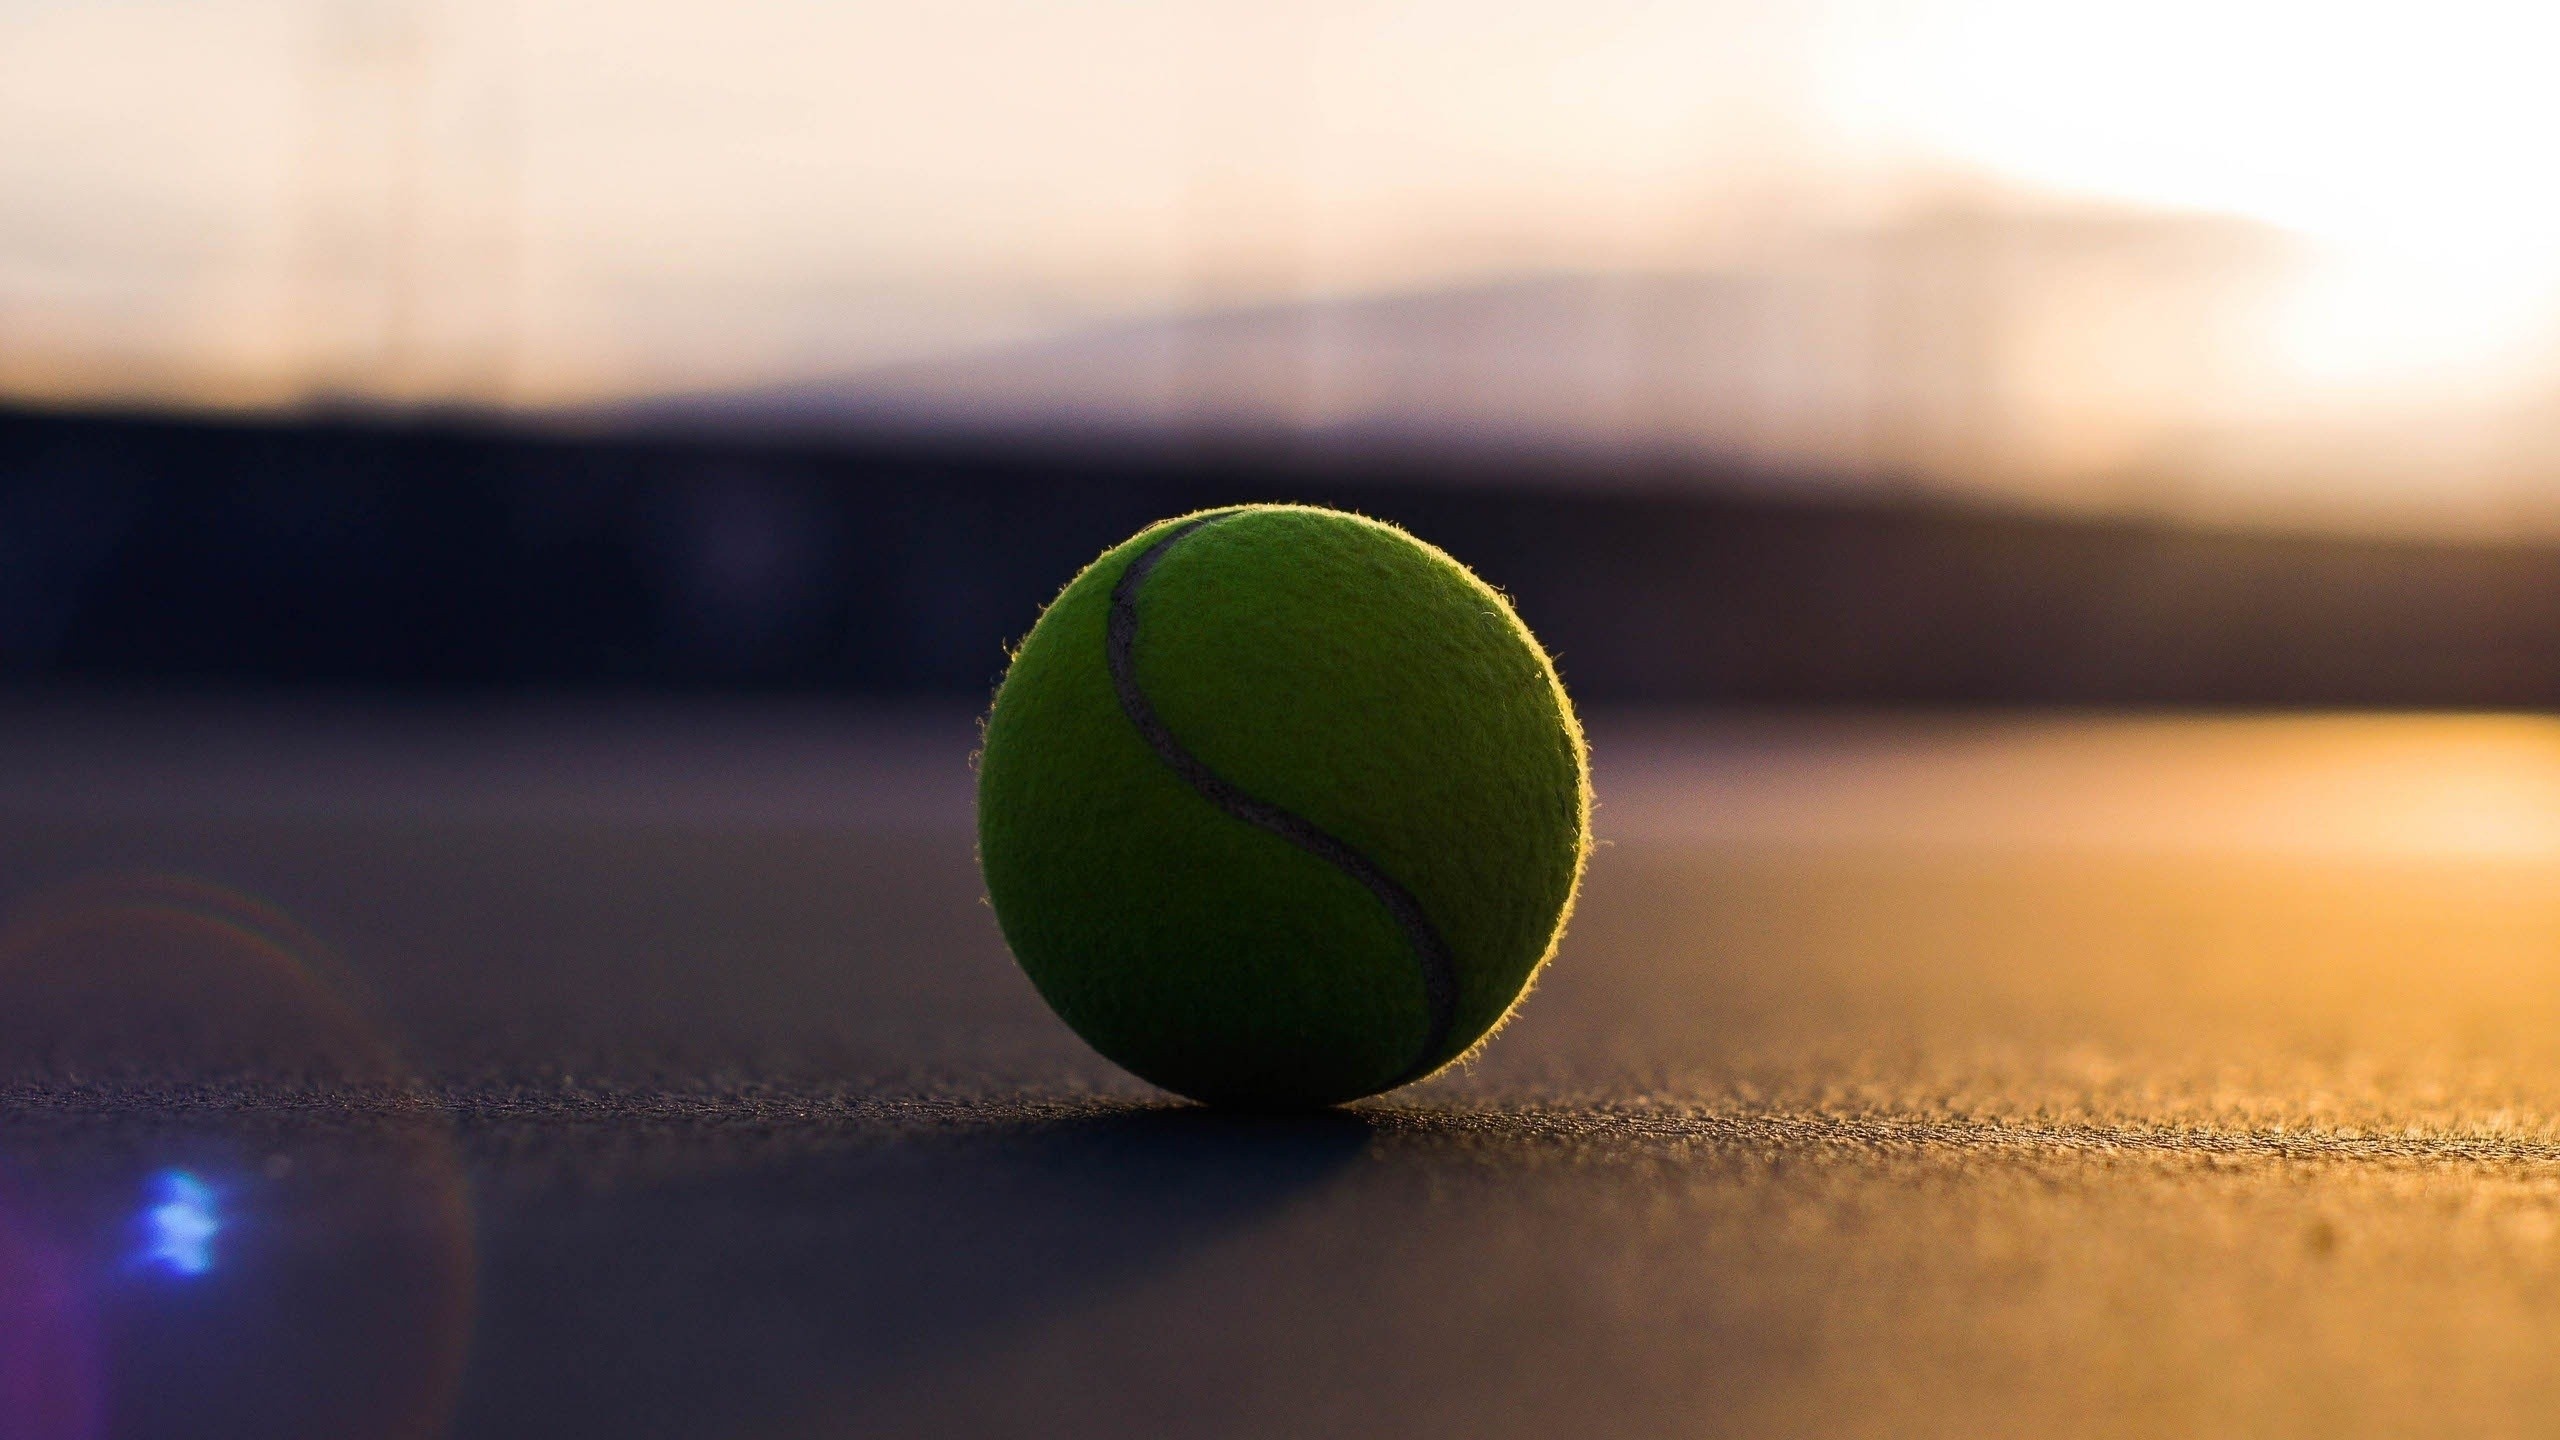 ball wallpaper hd,ball,green,tennis ball,tennis,ball